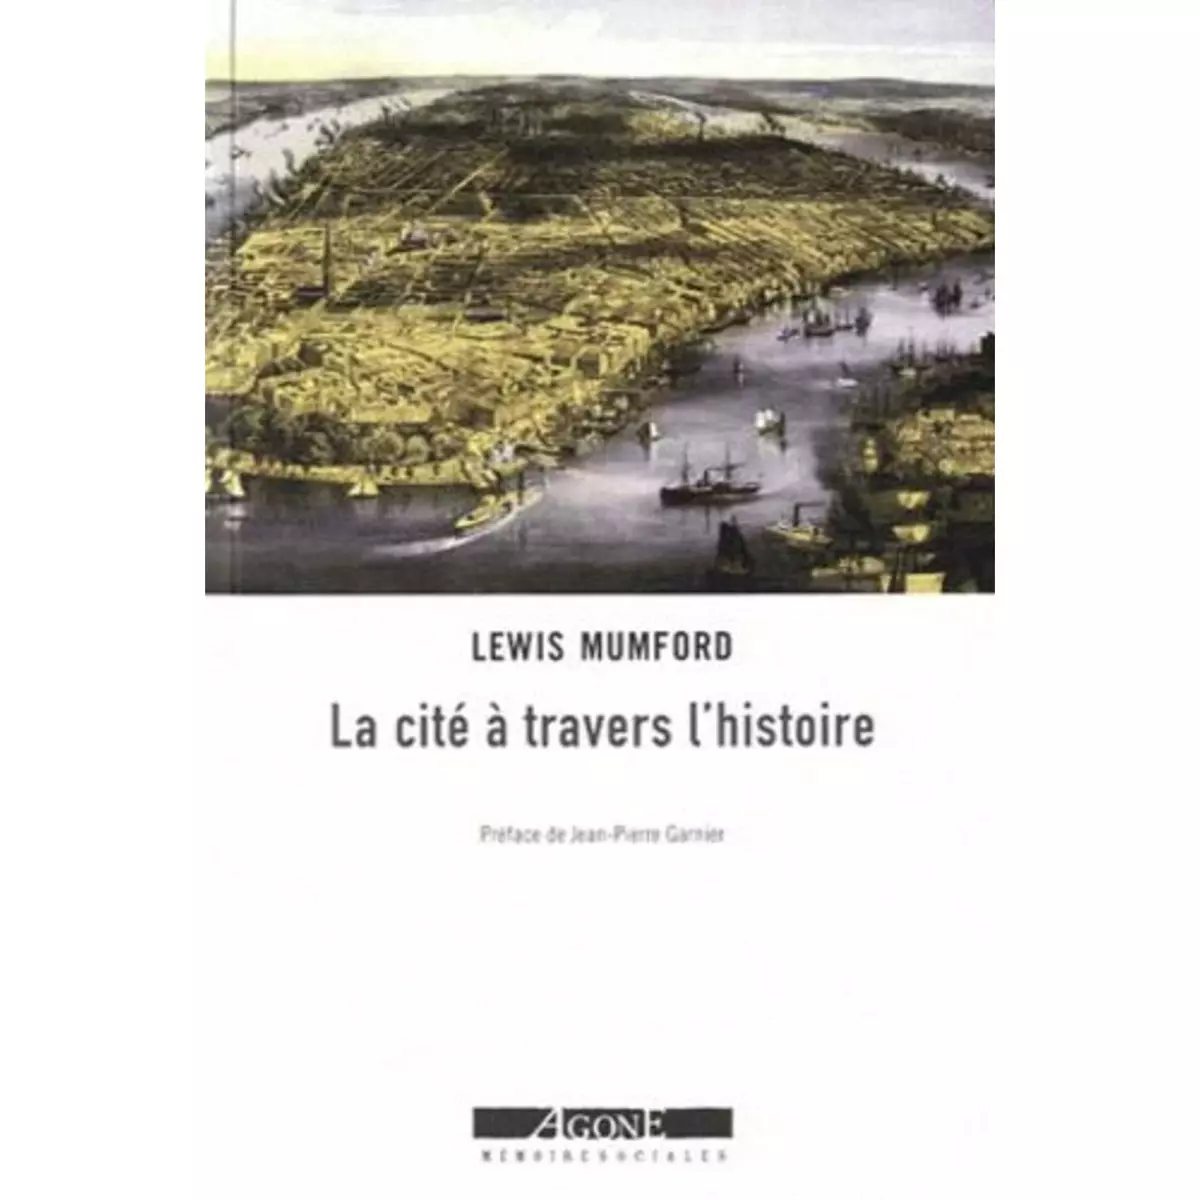  LA CITE A TRAVERS L'HISTOIRE, Mumford Lewis